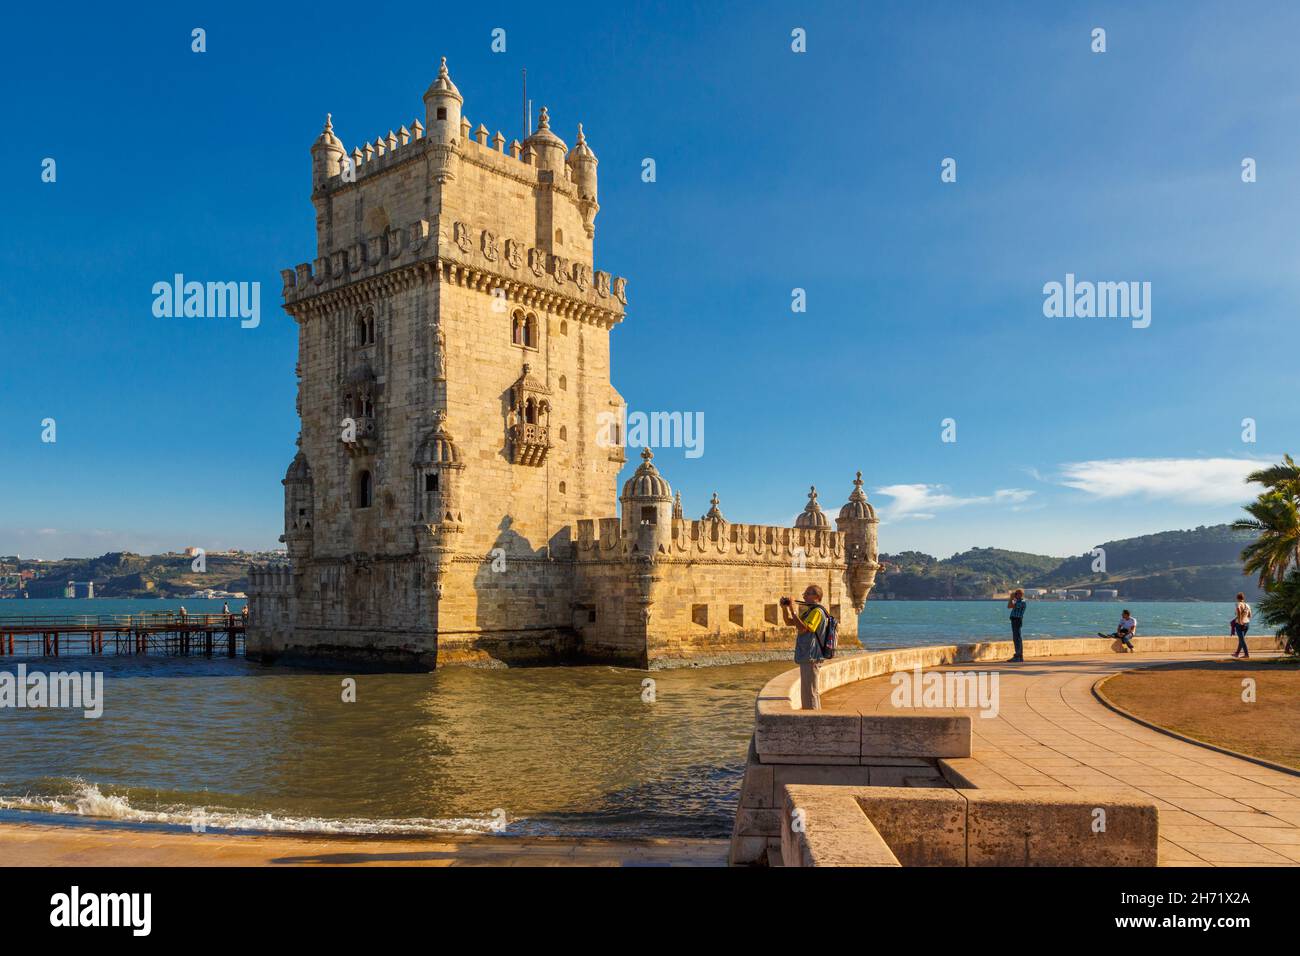 Lisbona, Portogallo. La Torre de Belem del XVI secolo. La torre è un importante esempio di architettura manuelina e un'UNESCO World Her Foto Stock